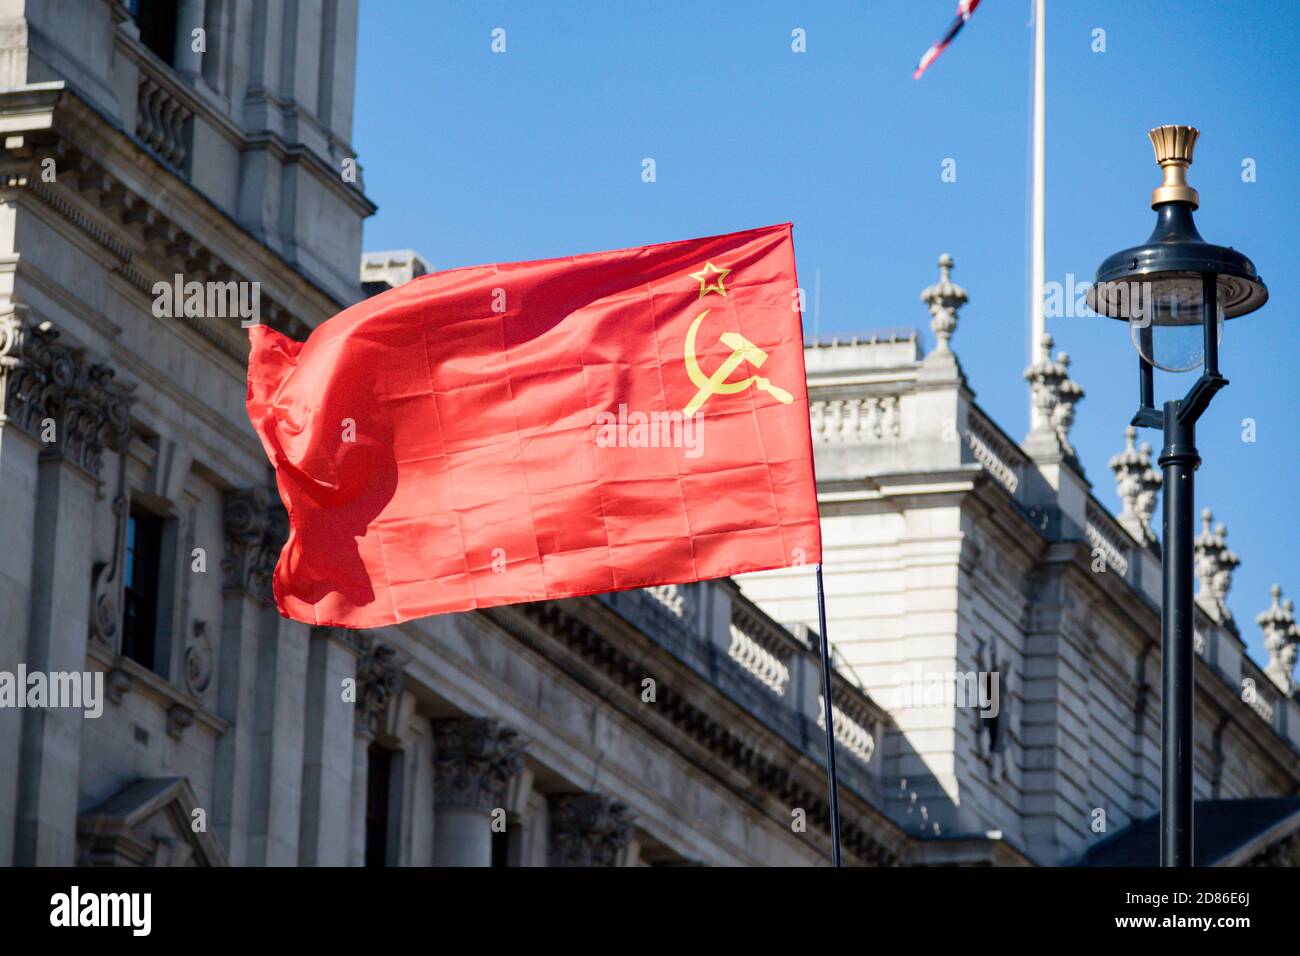 Londres, Royaume-Uni, 20 septembre 2019 :- les manifestants pour le changement climatique se réunissent à Westminster, prennent le drapeau de l'URSS Banque D'Images